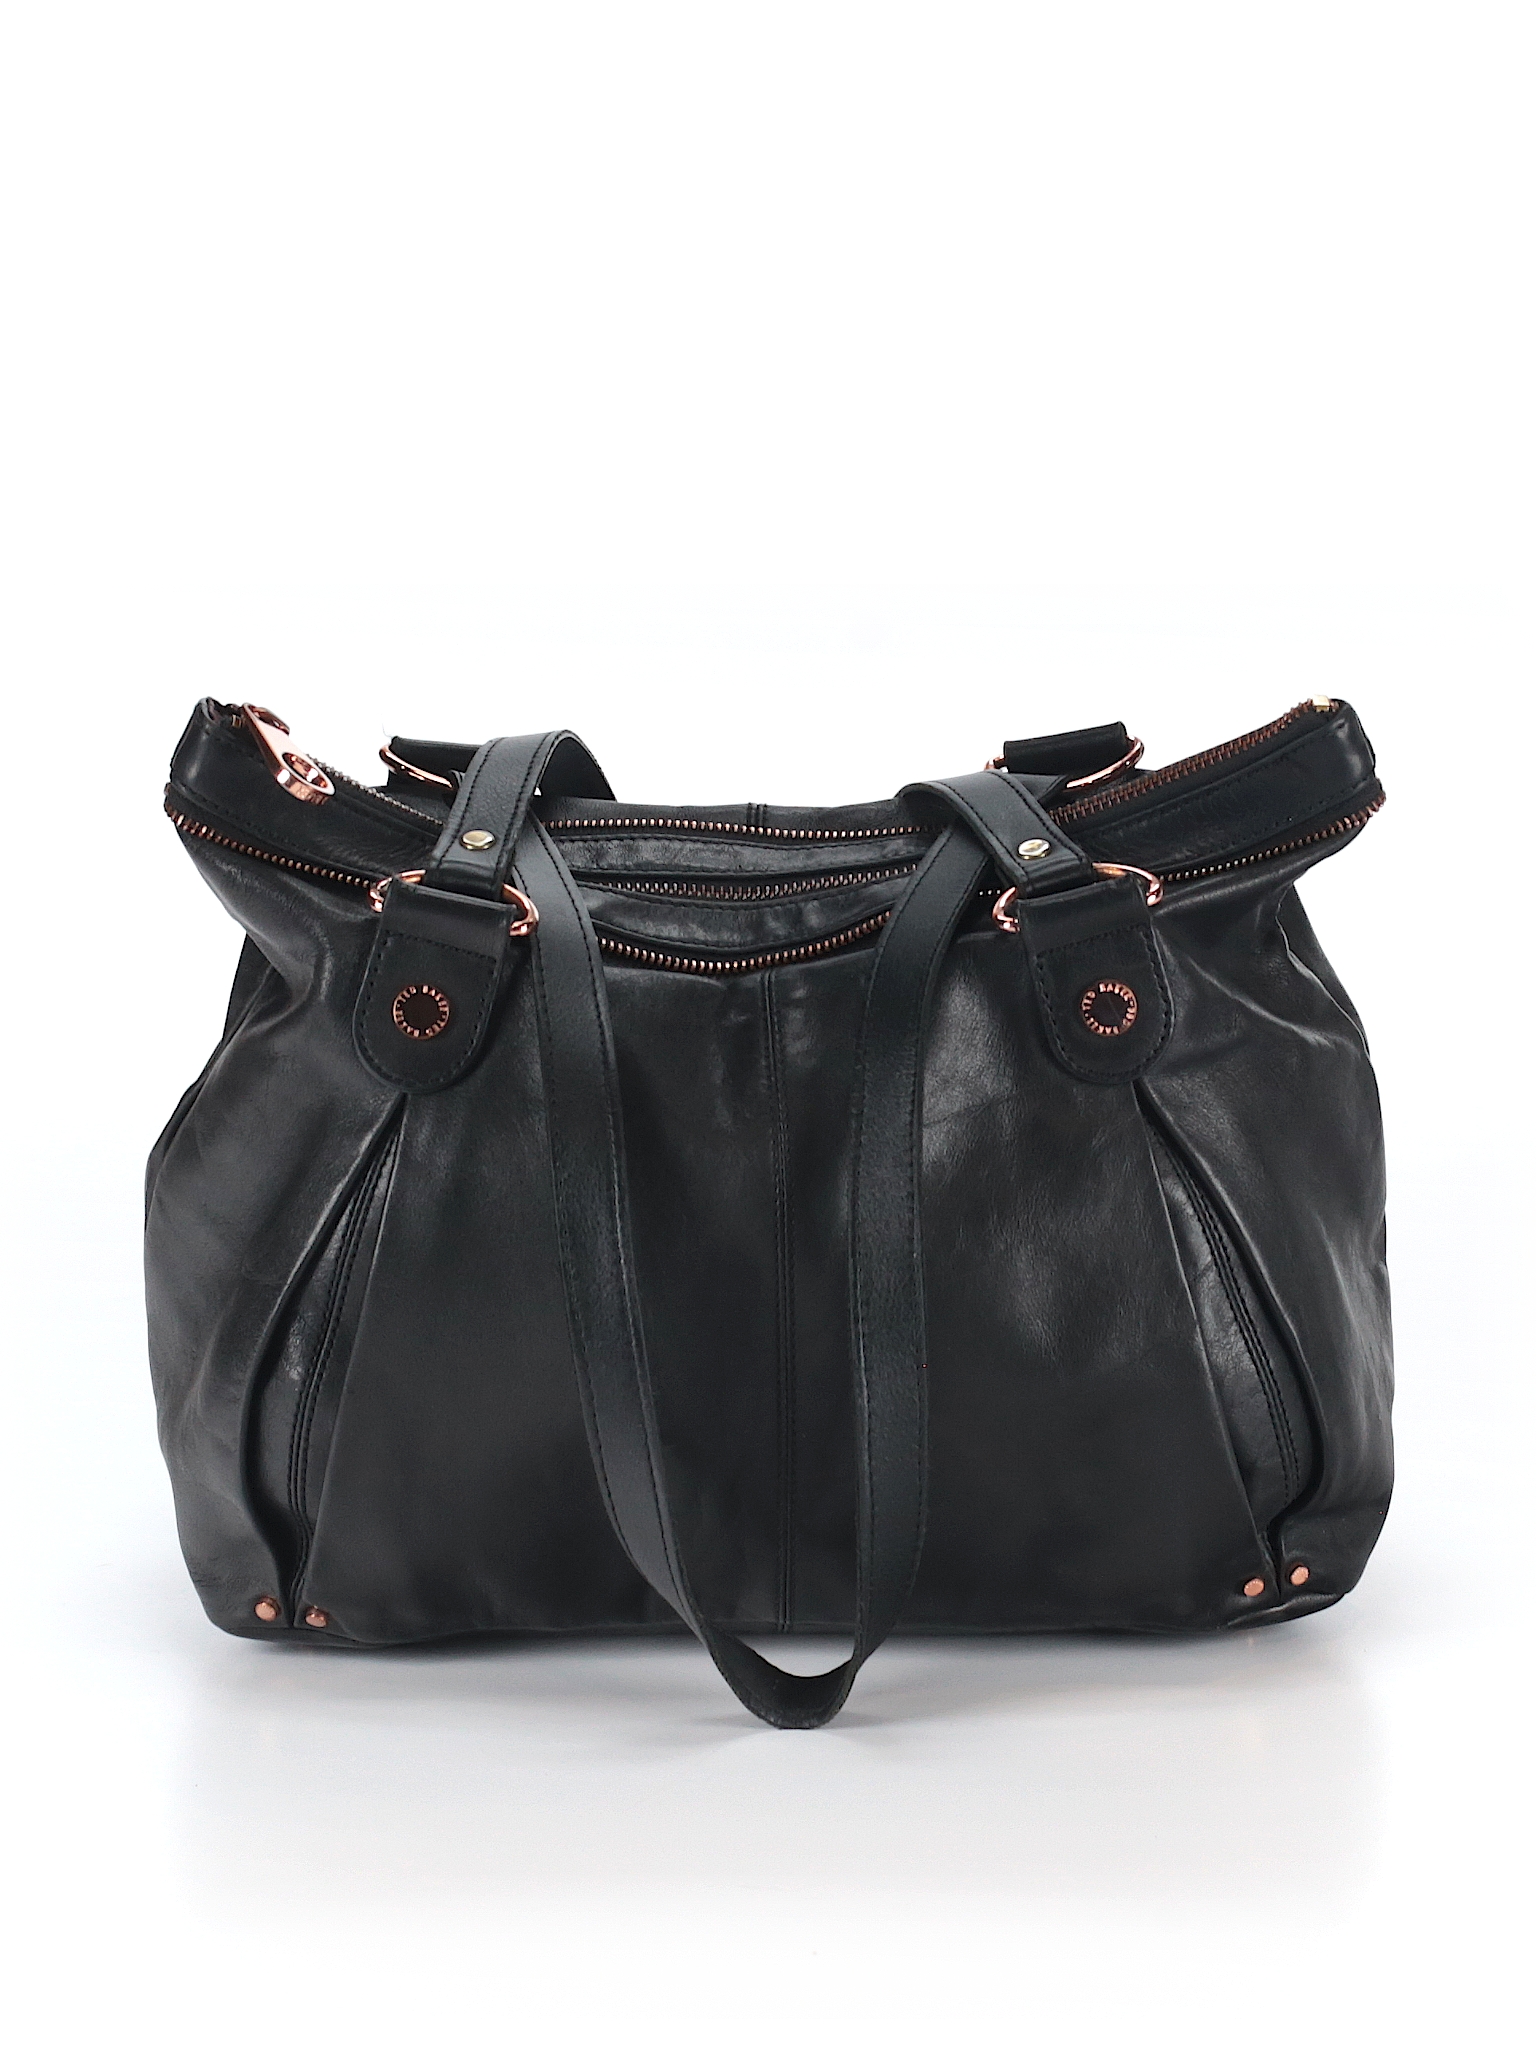 Ted Baker London Leather Shoulder Bag - 80% off only on thredUP